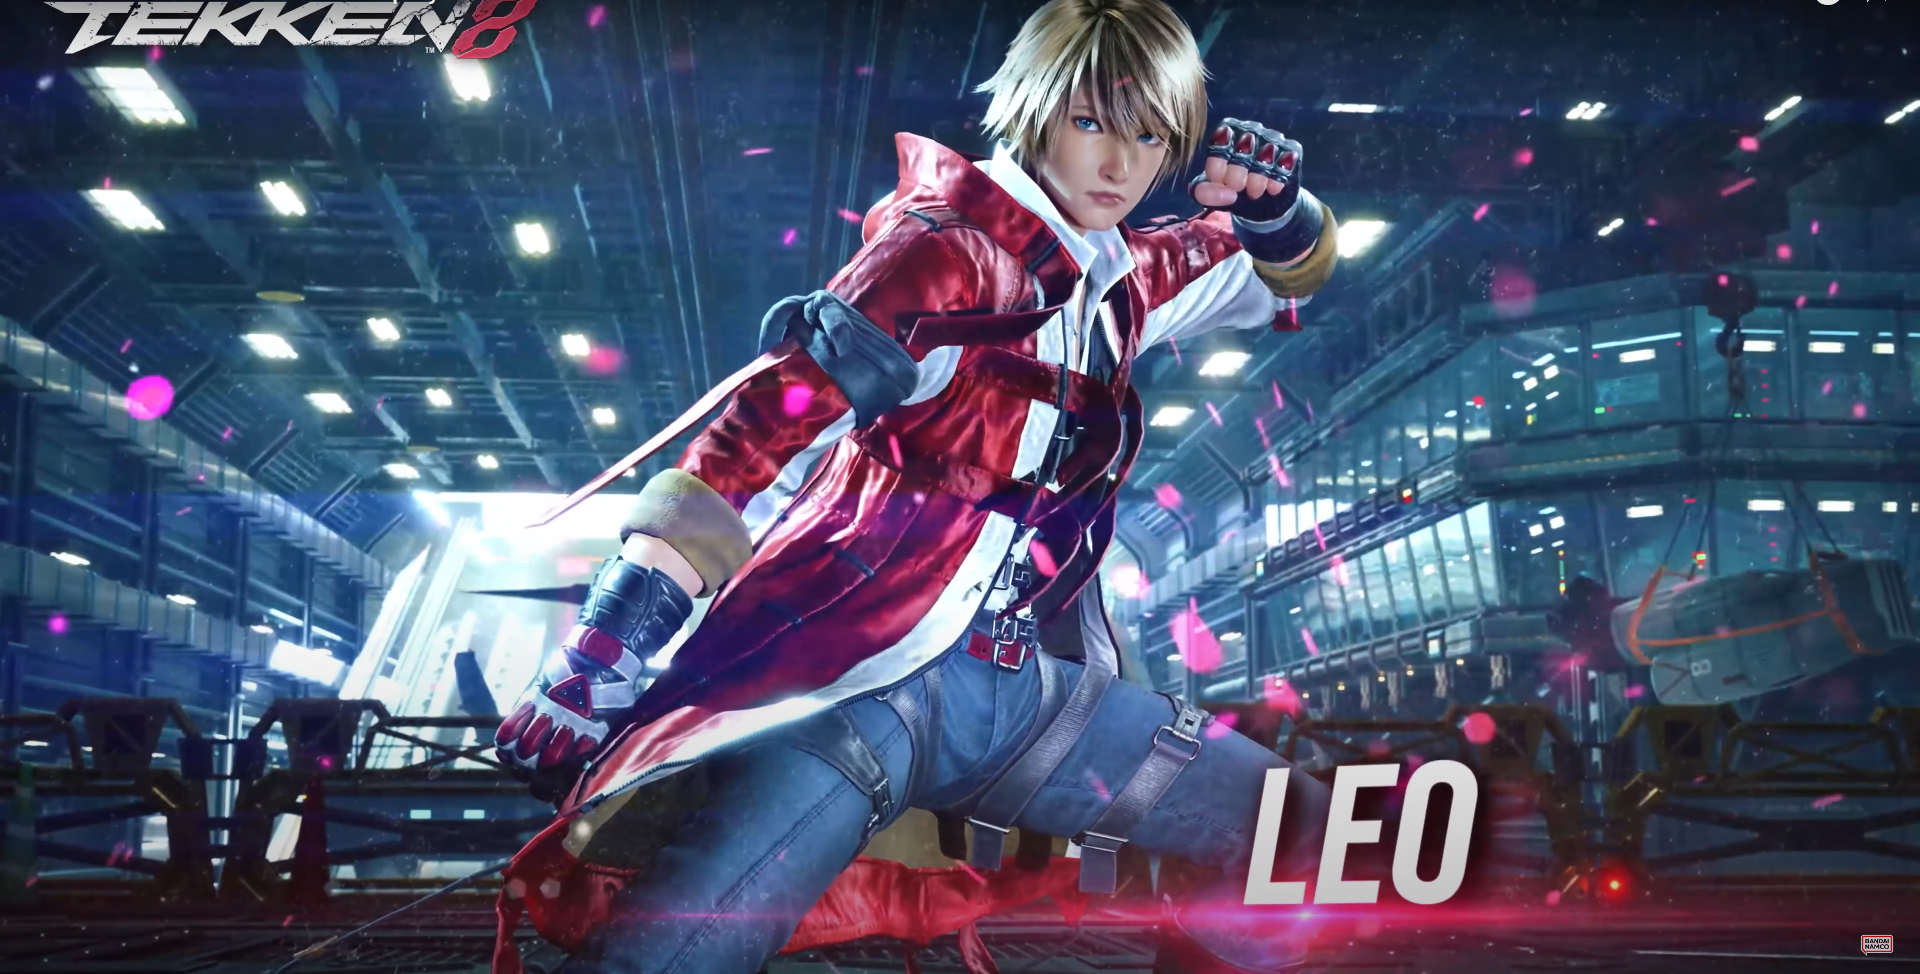 Bandai Namco wypuściło nowy zwiastun Tekken 8, w którym można przyjrzeć się kolejnej postaci - Leo